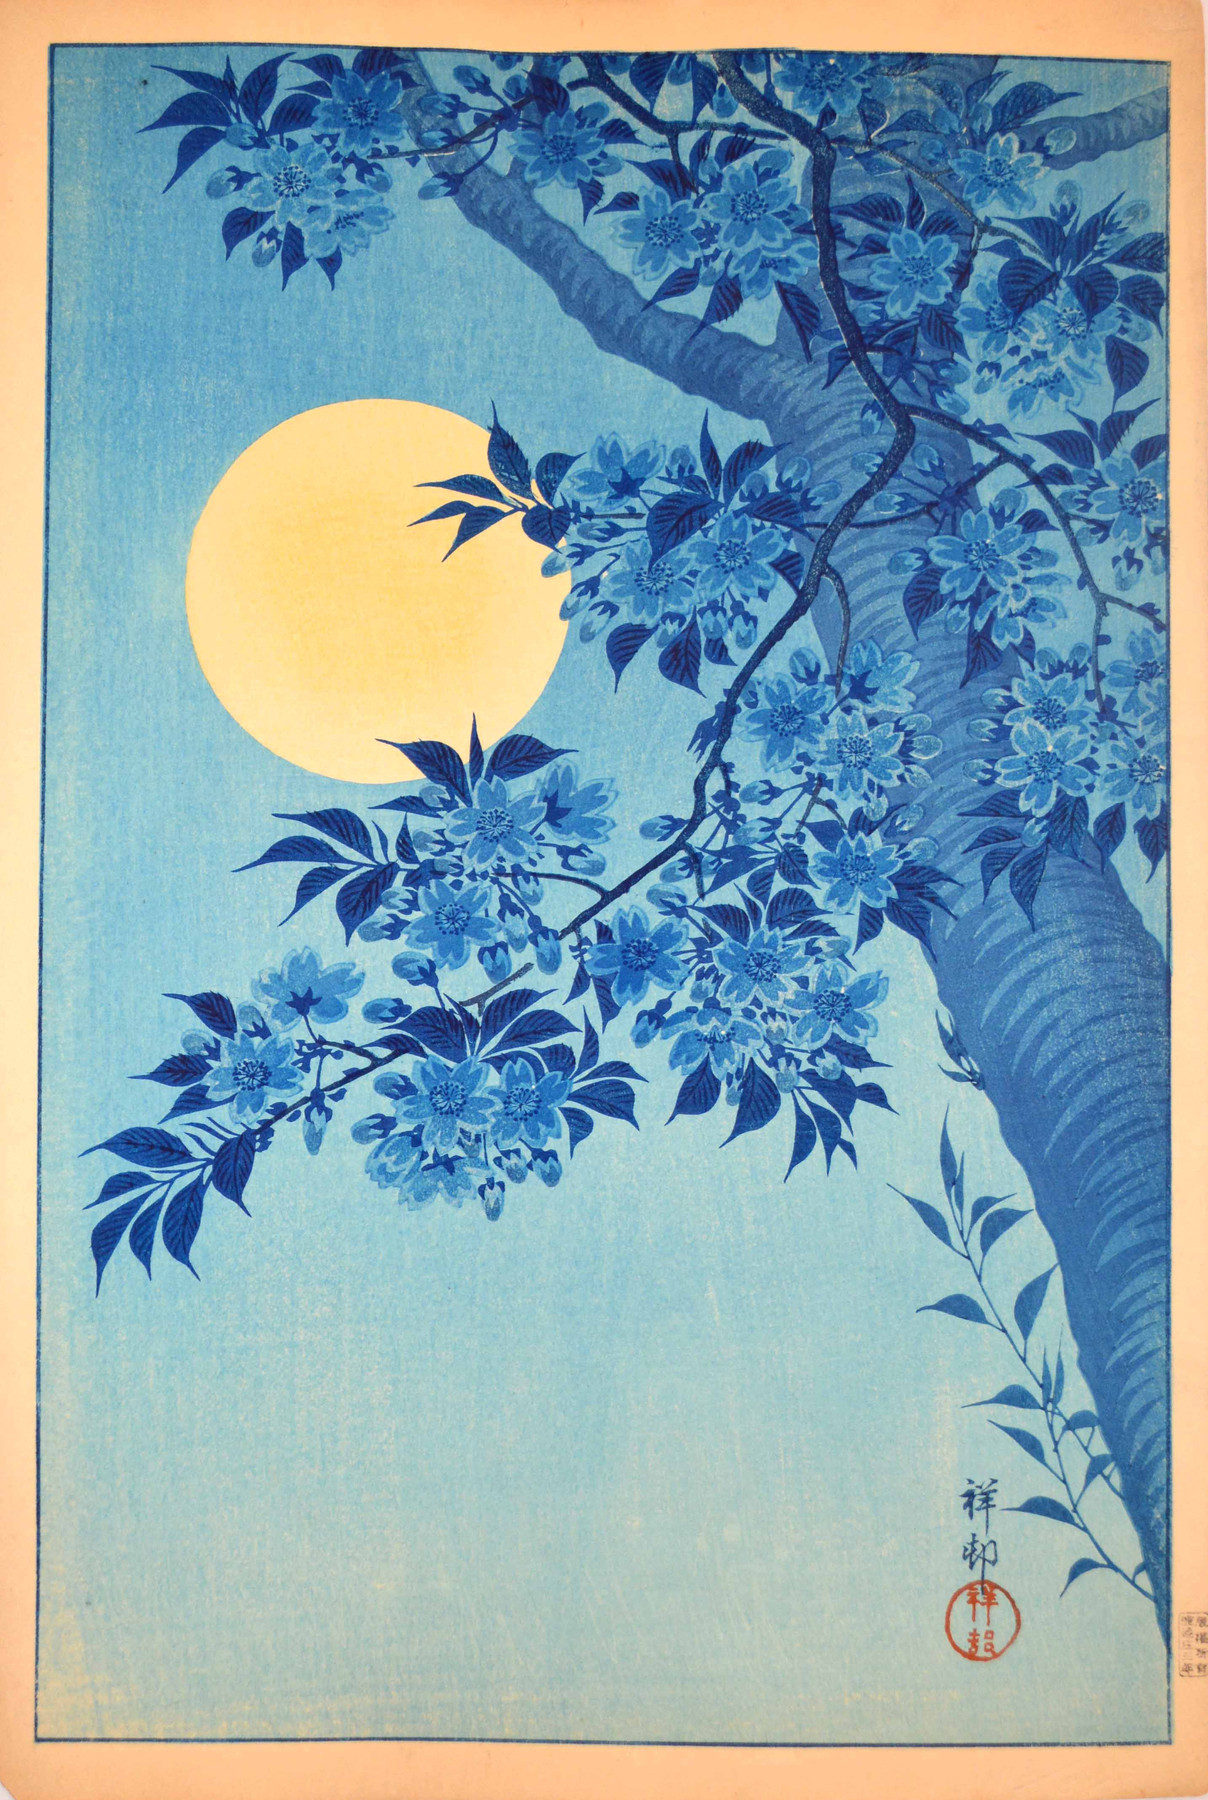 Flori de cireș și lună plină by Ohara Koson - 1932 - 26 x 39 cm 